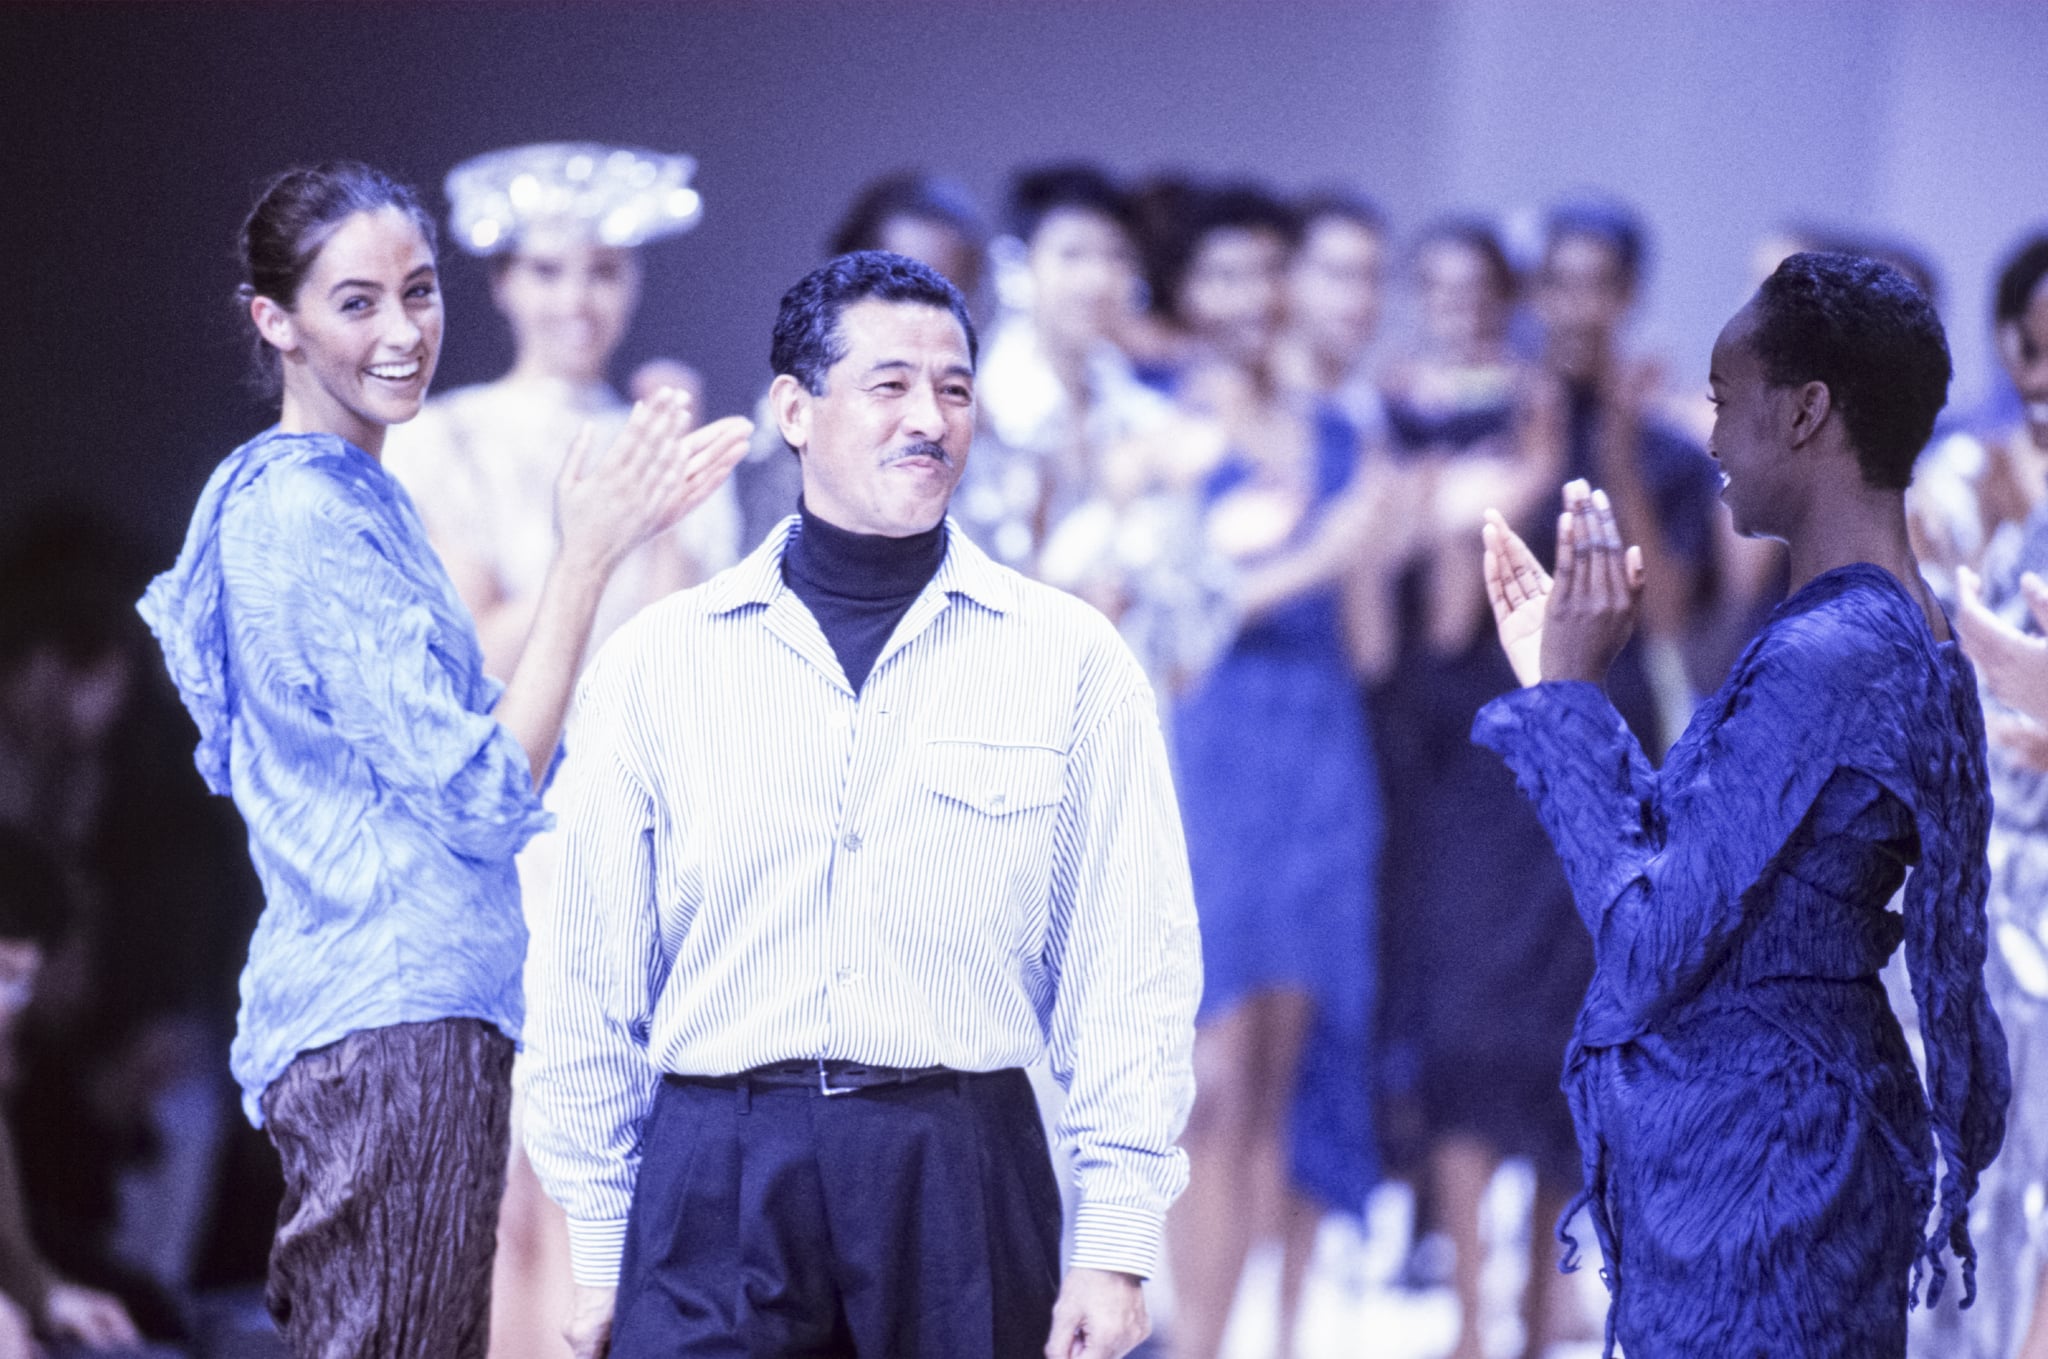 le couturier Issey Miyake et ses mannequins lors de son défilé, Prêt-à-Porter, coleção Printemps-été 1992 à Paris em outubro de 1991, França.  (Foto por ARNAL/GARCIA/Gamma-Rapho via Getty Images)